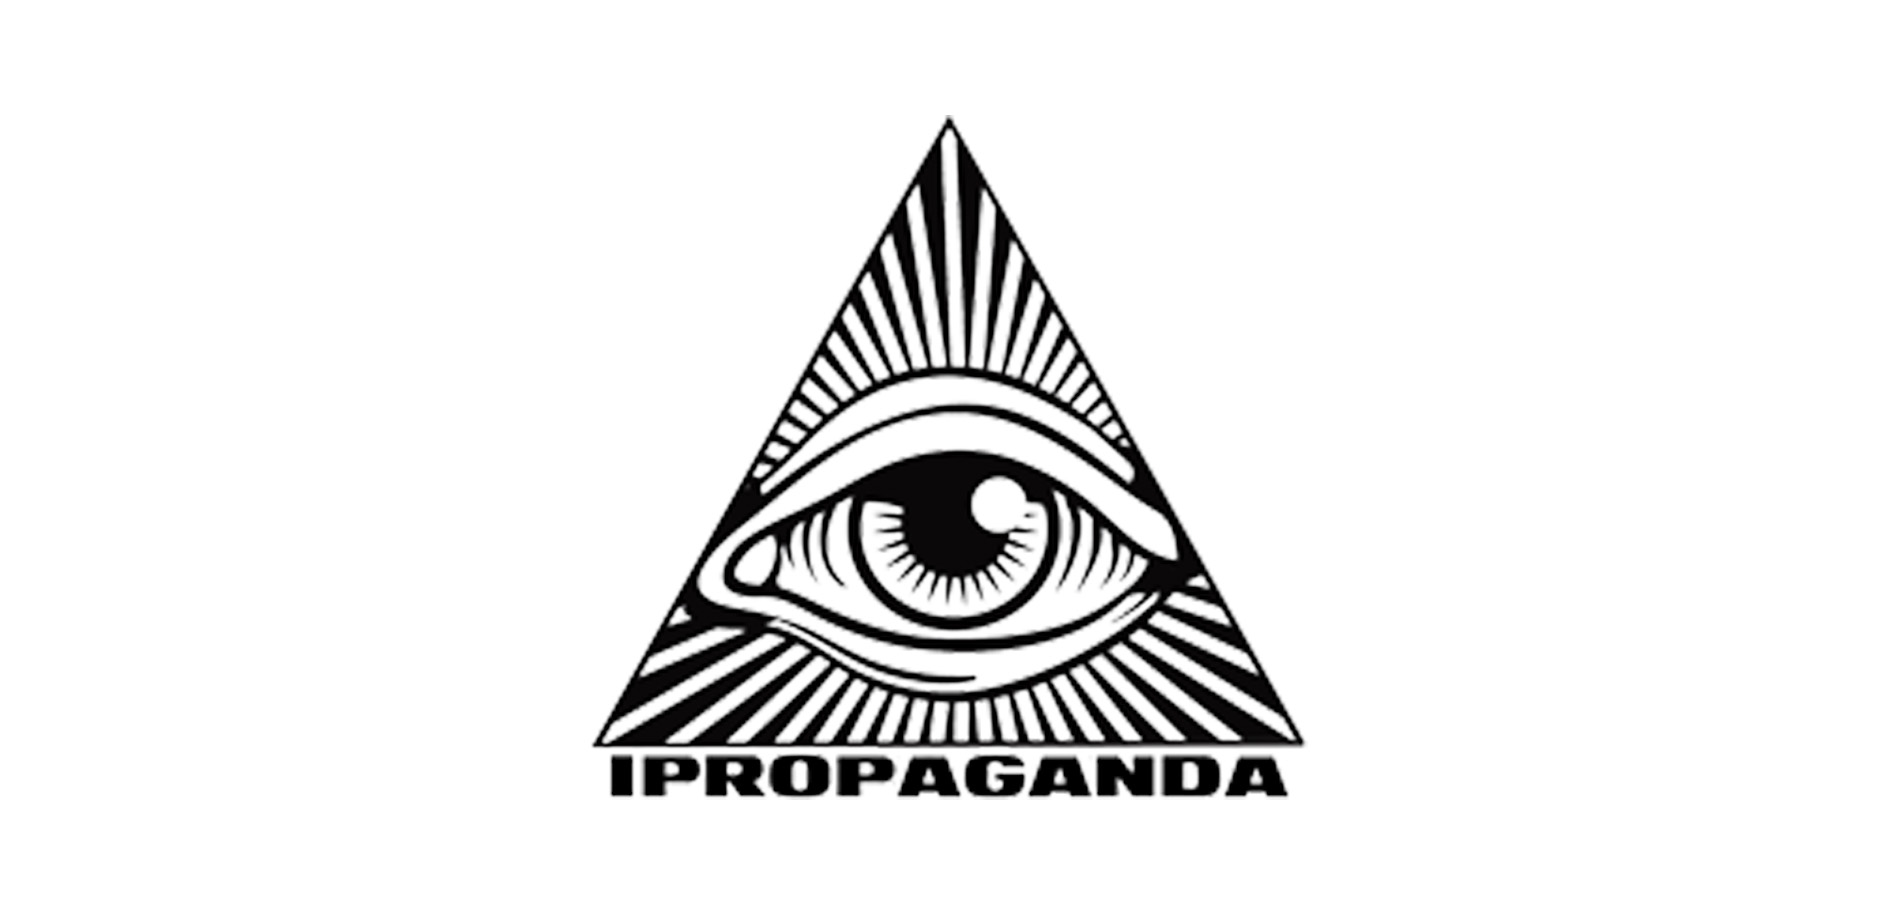 ipropaganda magazine logo